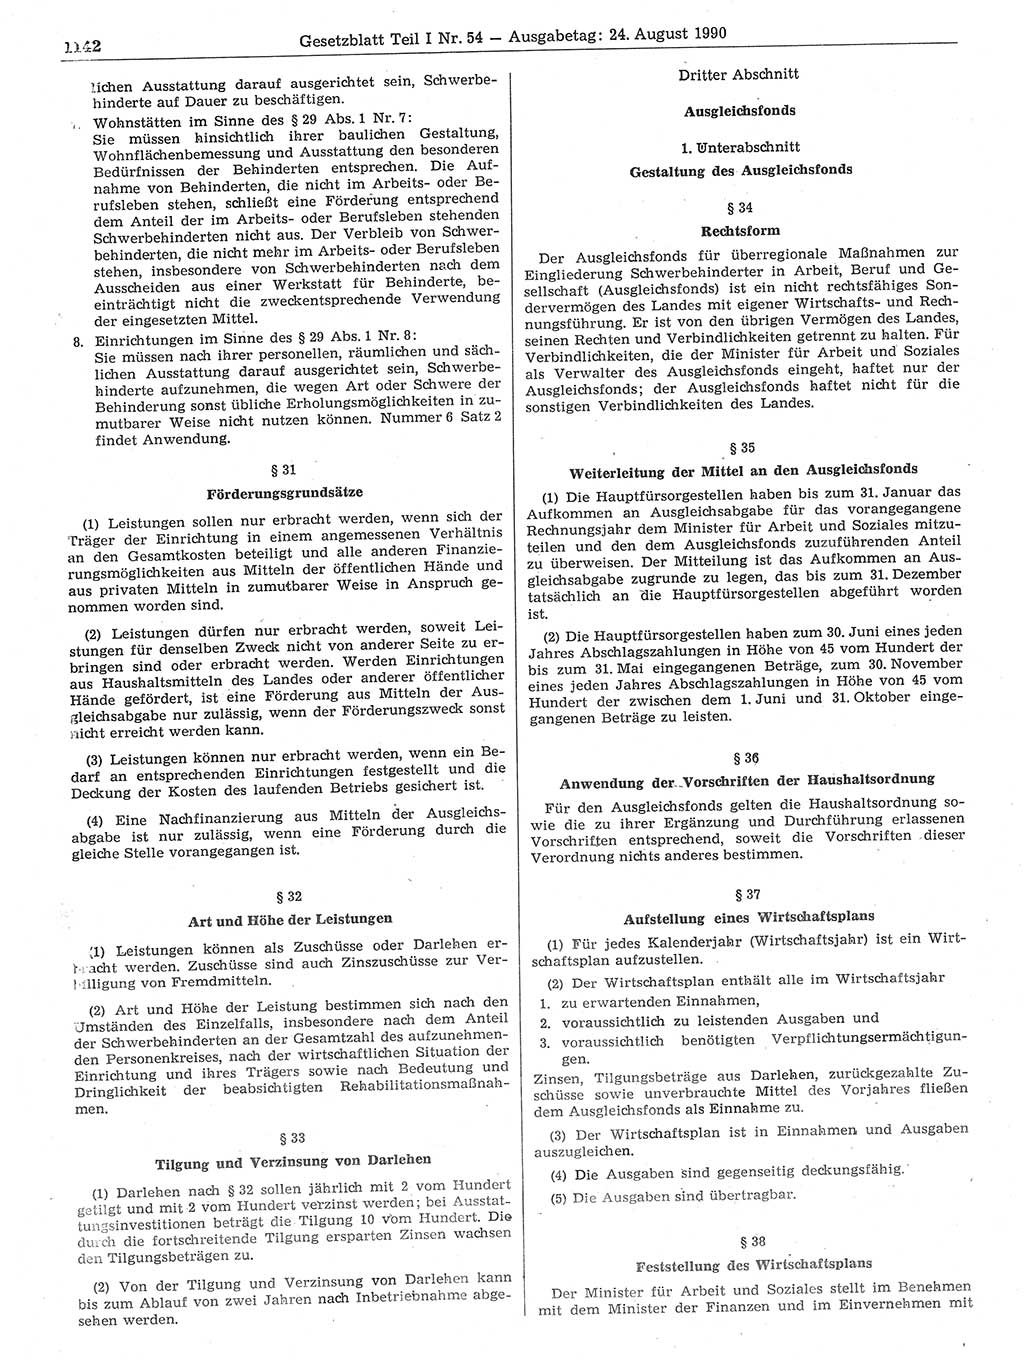 Gesetzblatt (GBl.) der Deutschen Demokratischen Republik (DDR) Teil Ⅰ 1990, Seite 1142 (GBl. DDR Ⅰ 1990, S. 1142)